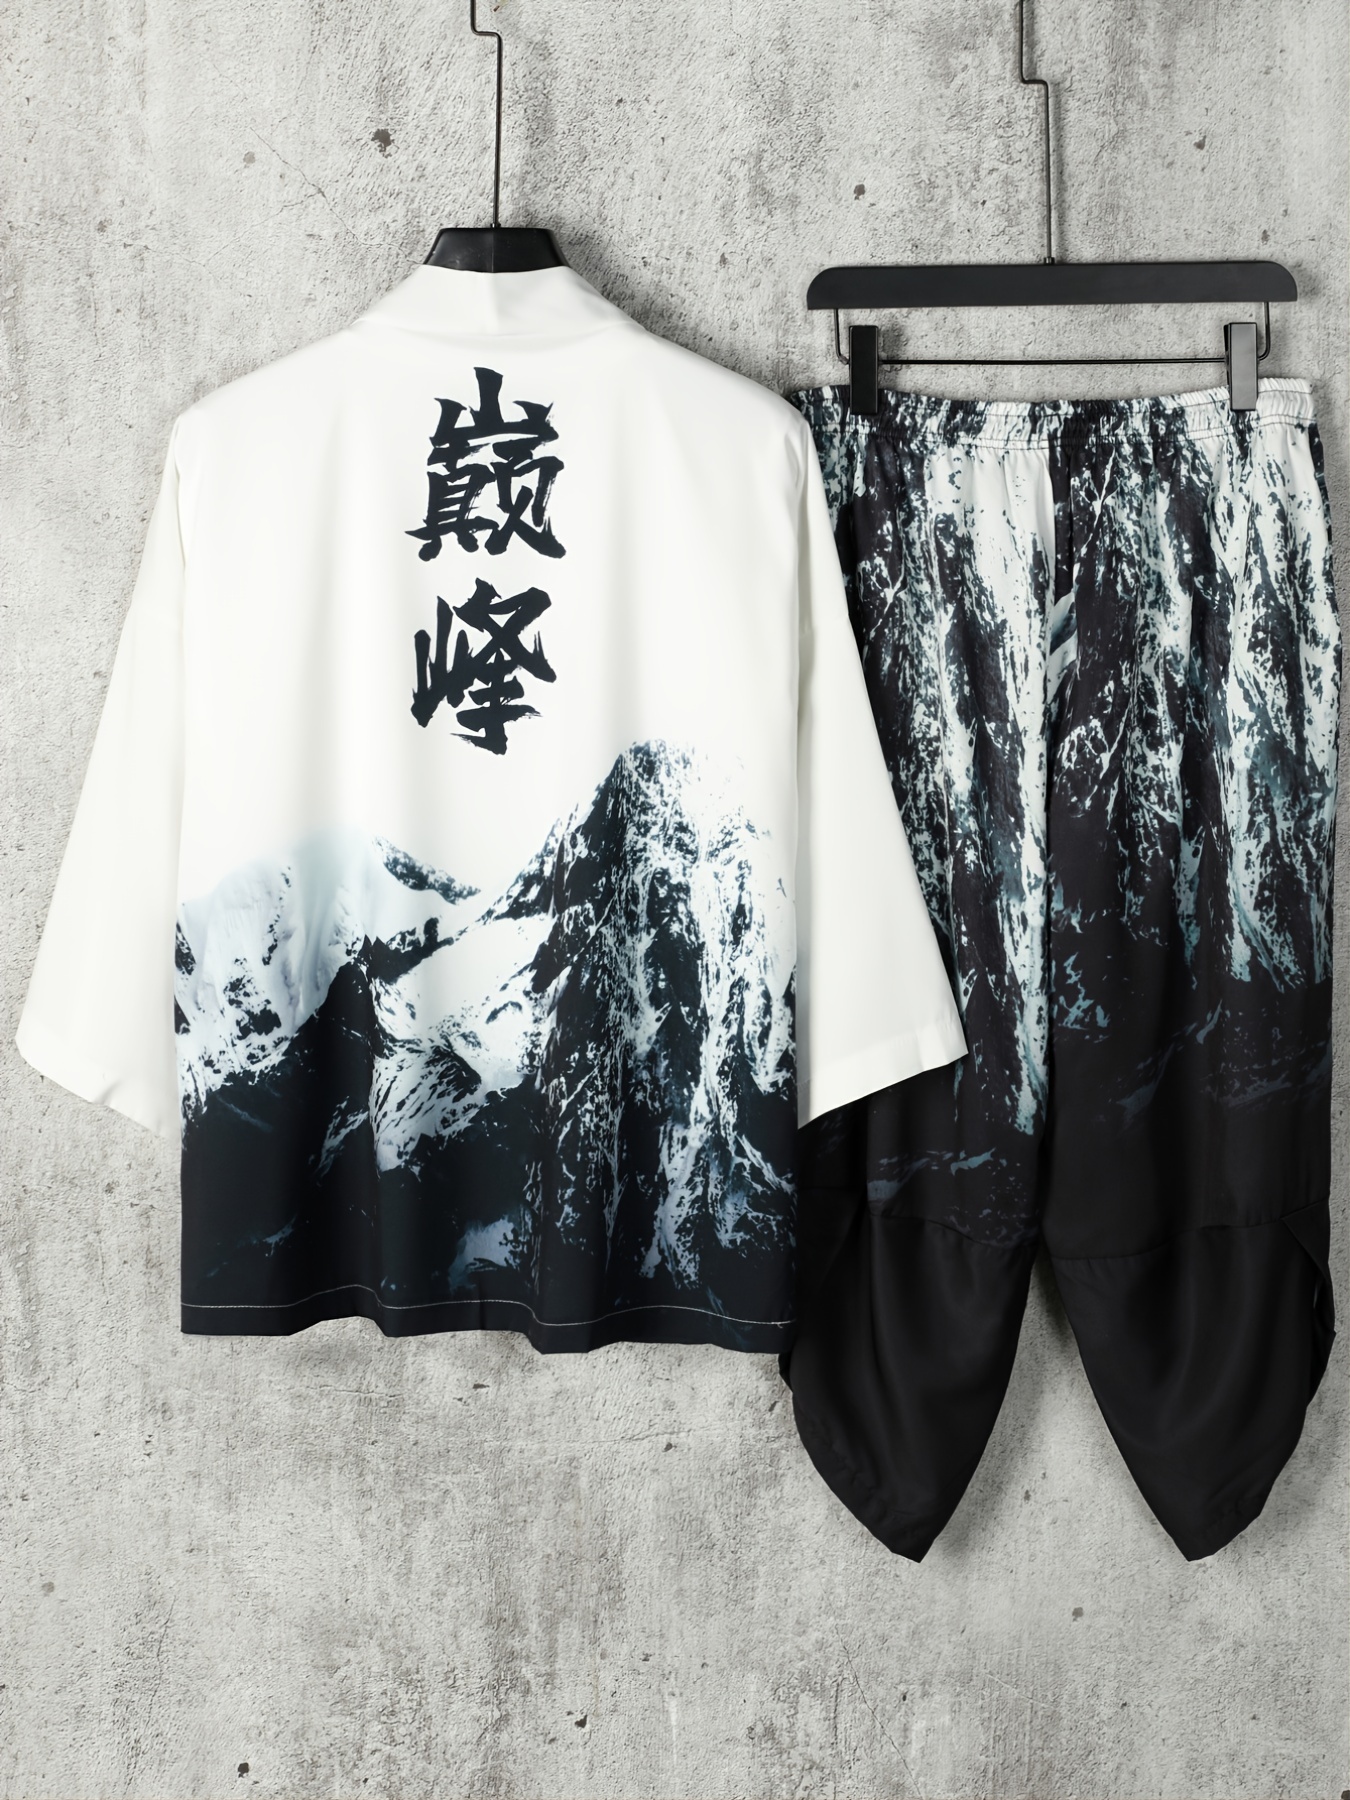 Foxy Legs Pants  Clothing patterns, Kimono cardi, Pants sewing